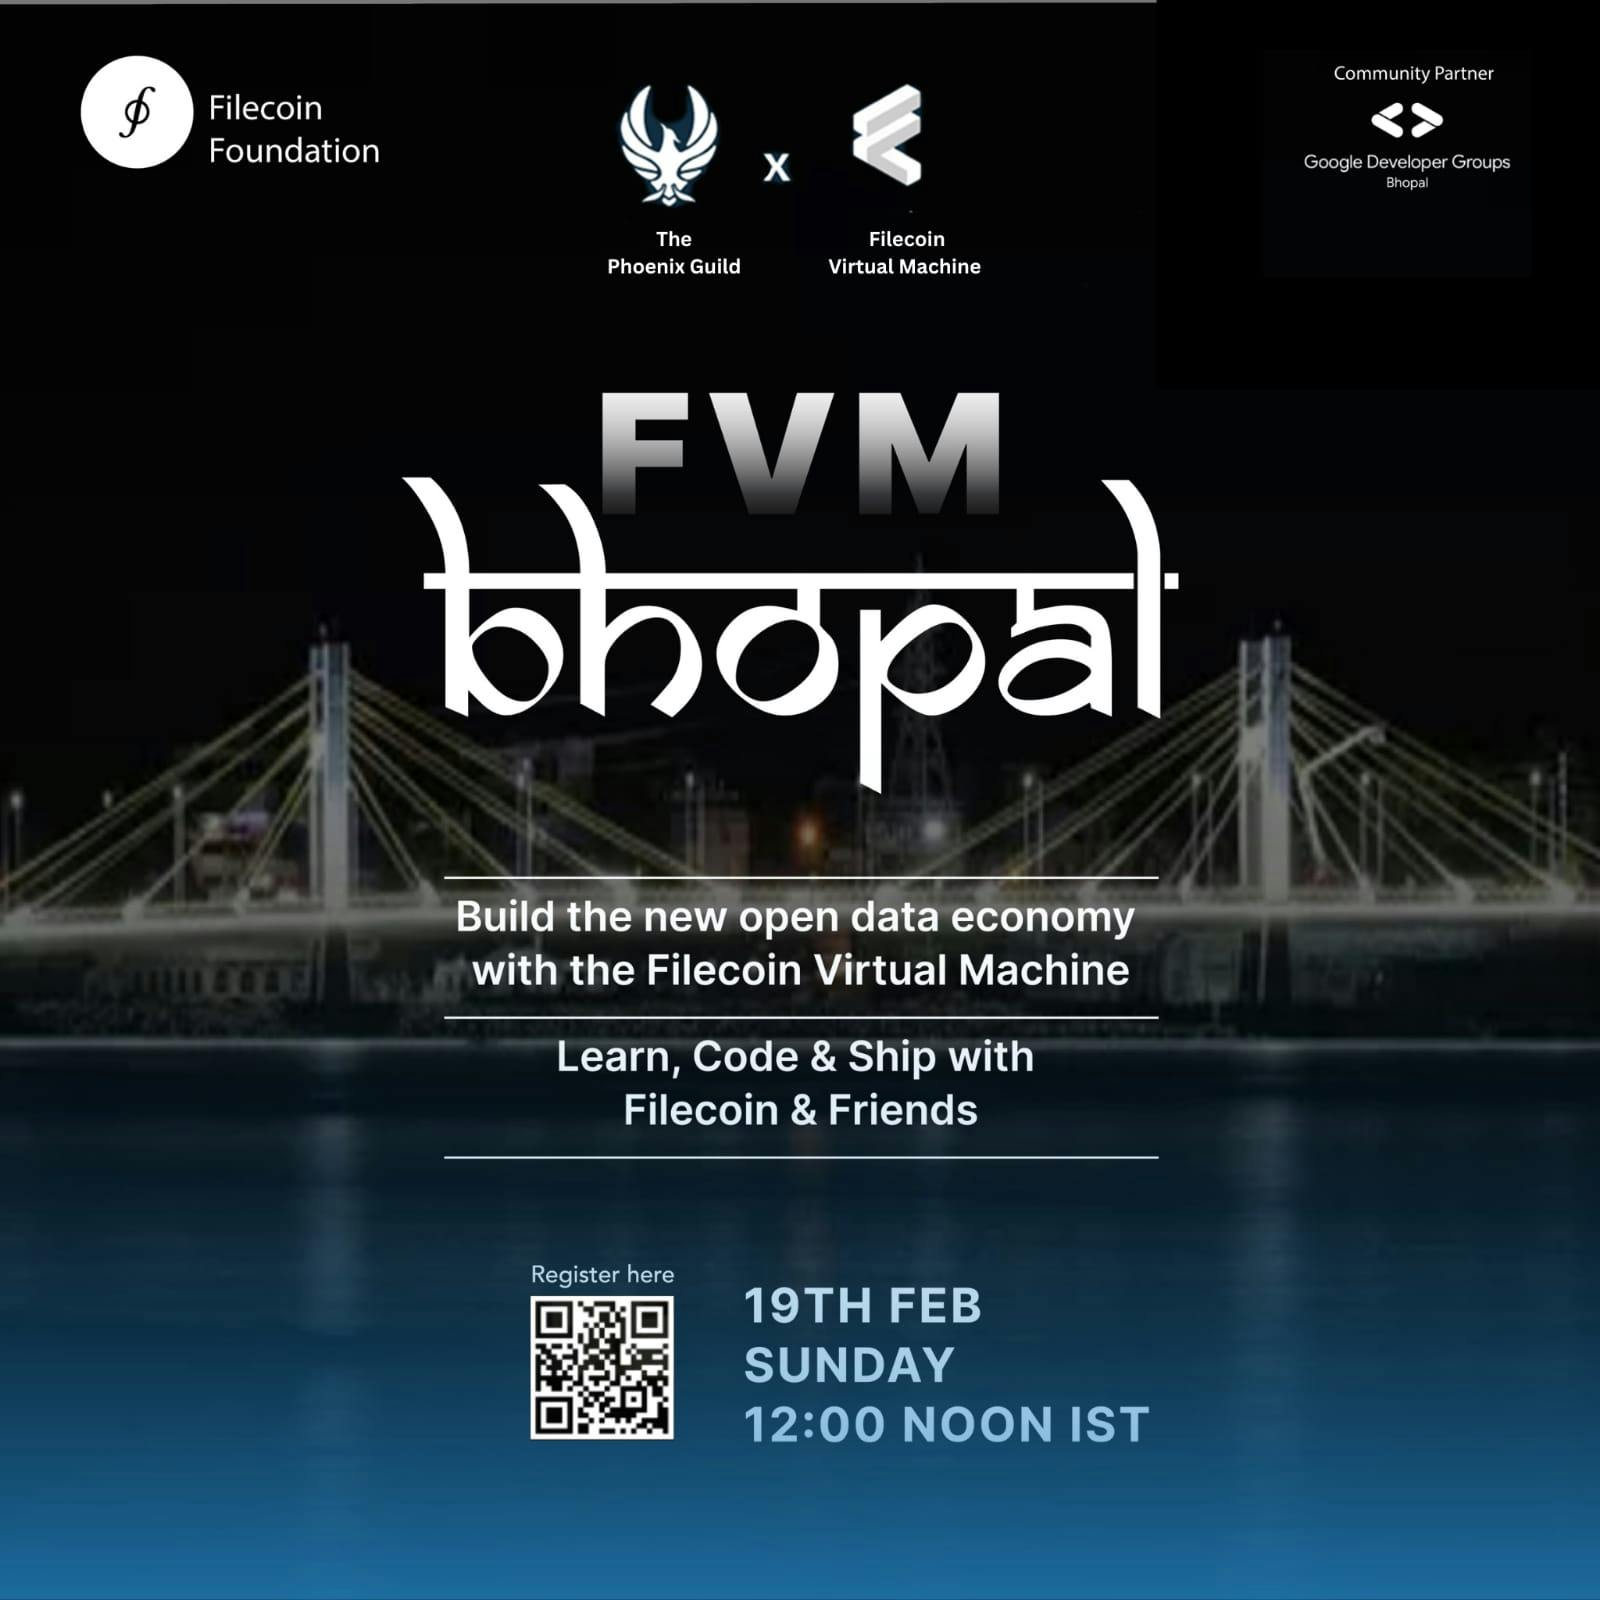 The FVM Bhopal